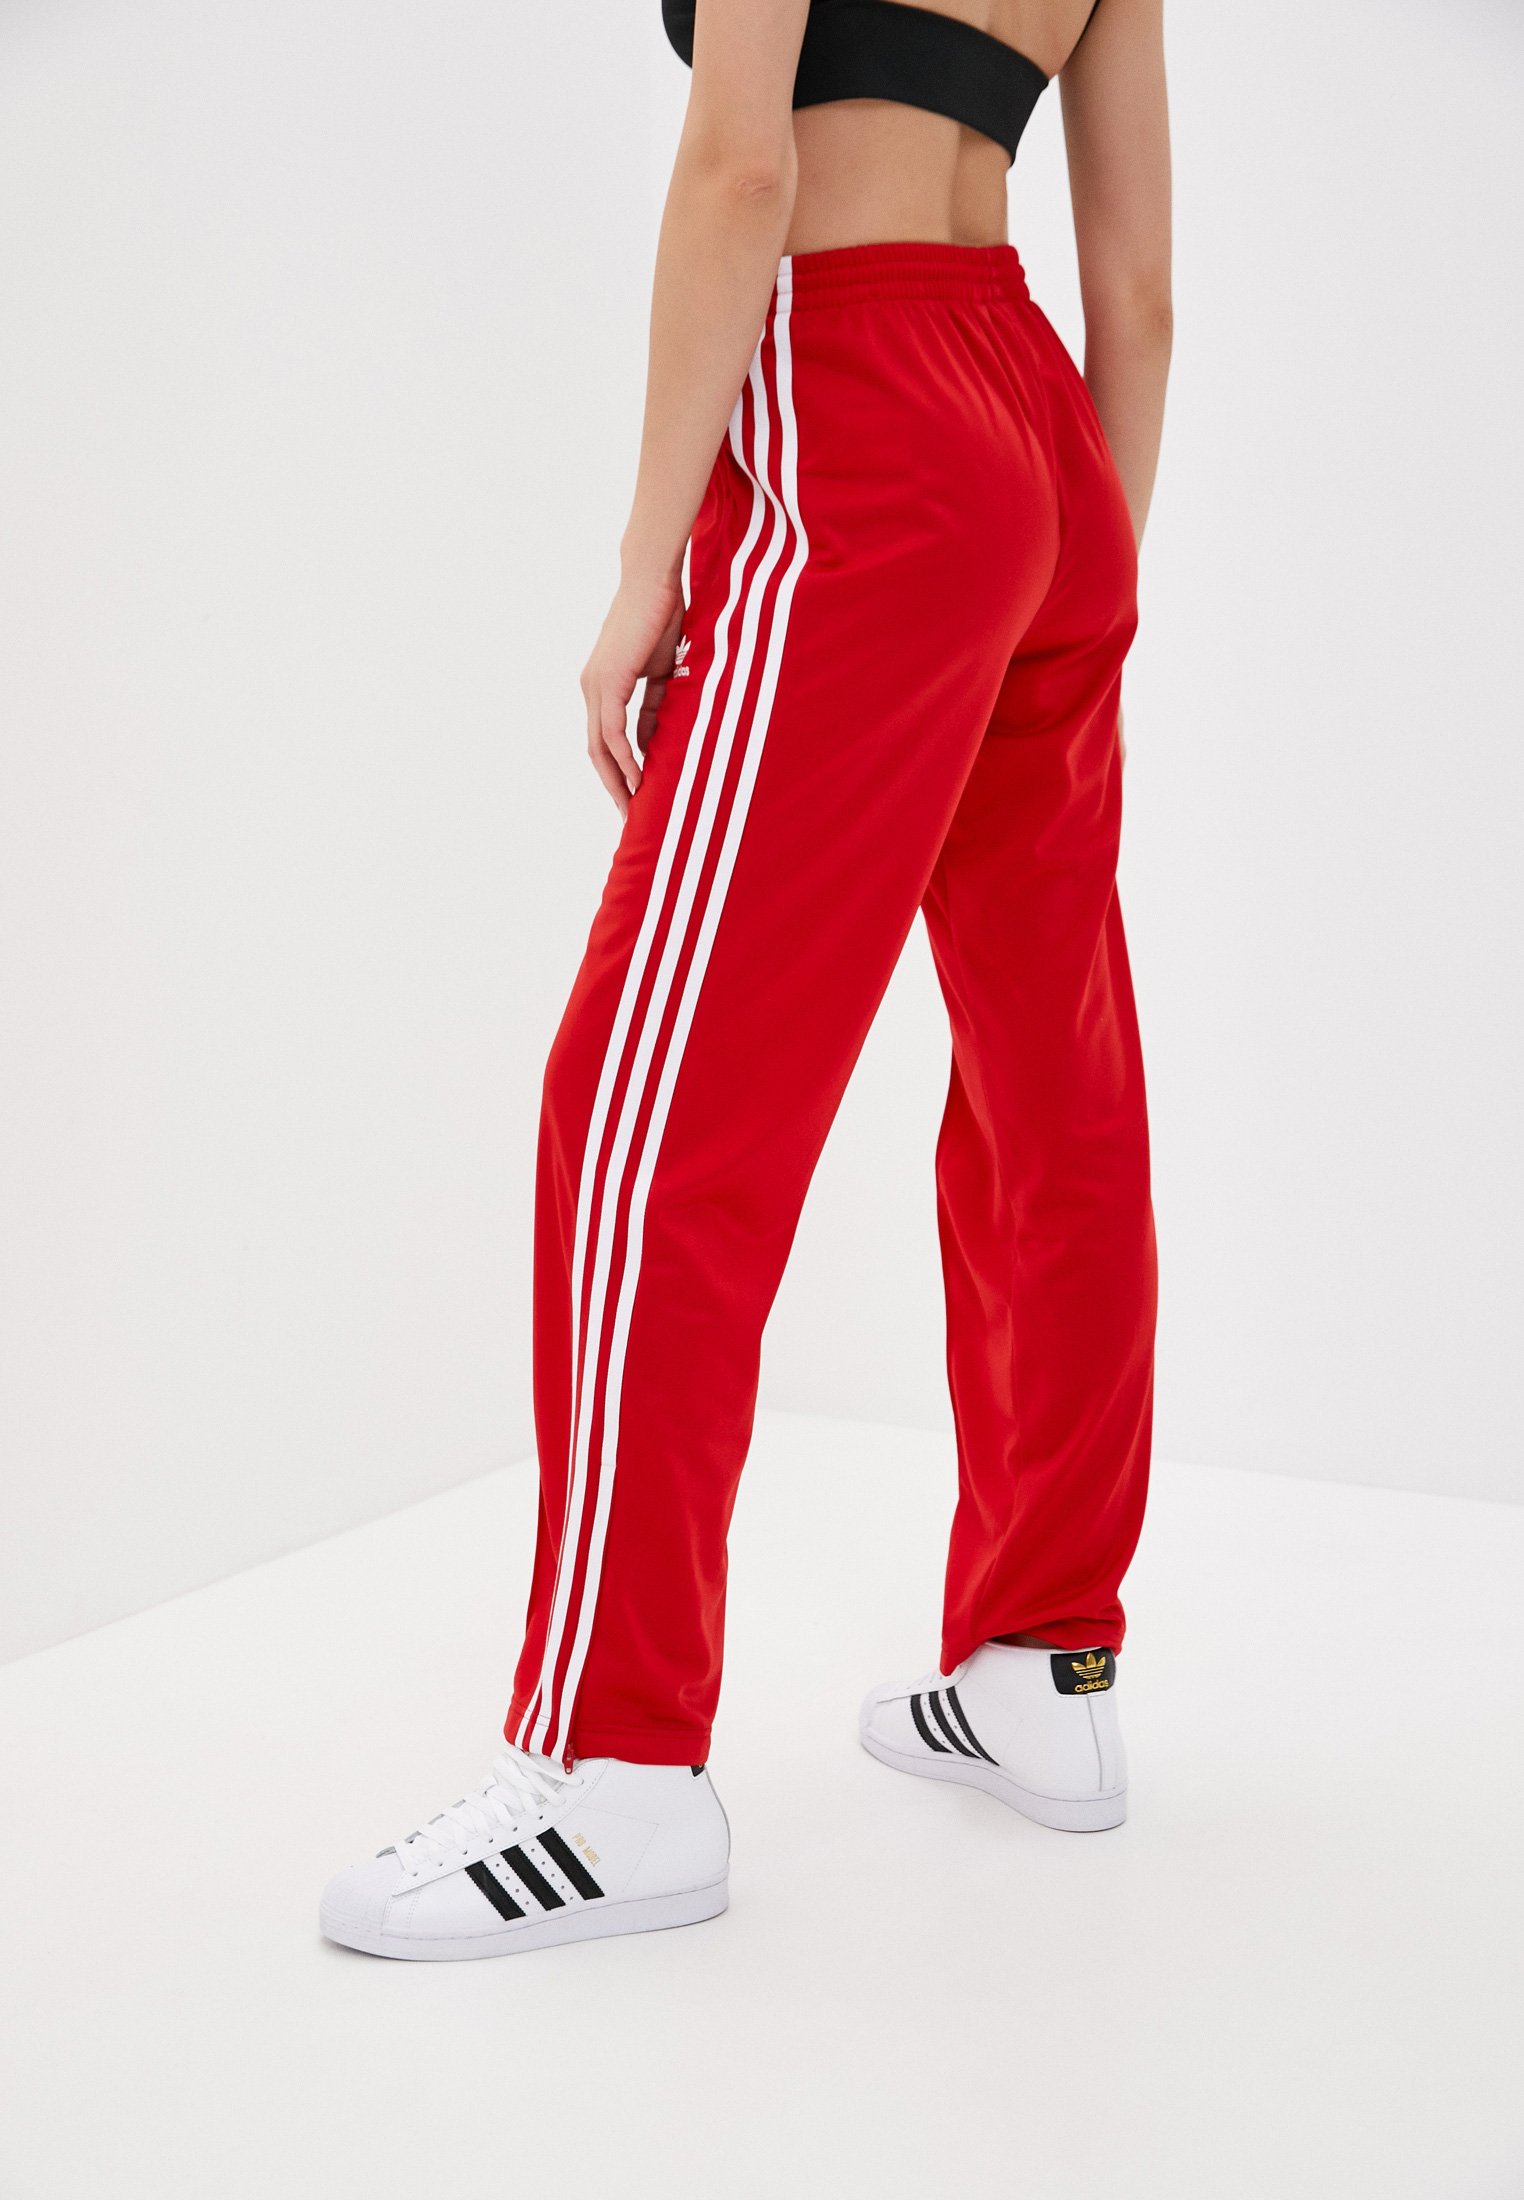 Красные штаны адидас. Adidas штаны с лампасами adidas. Брюки спортивные Firebird TP PB adidas Originals. Adidas Originals Firebird TP PB брюки спортивные женские. Adidas Originals Red штаны.